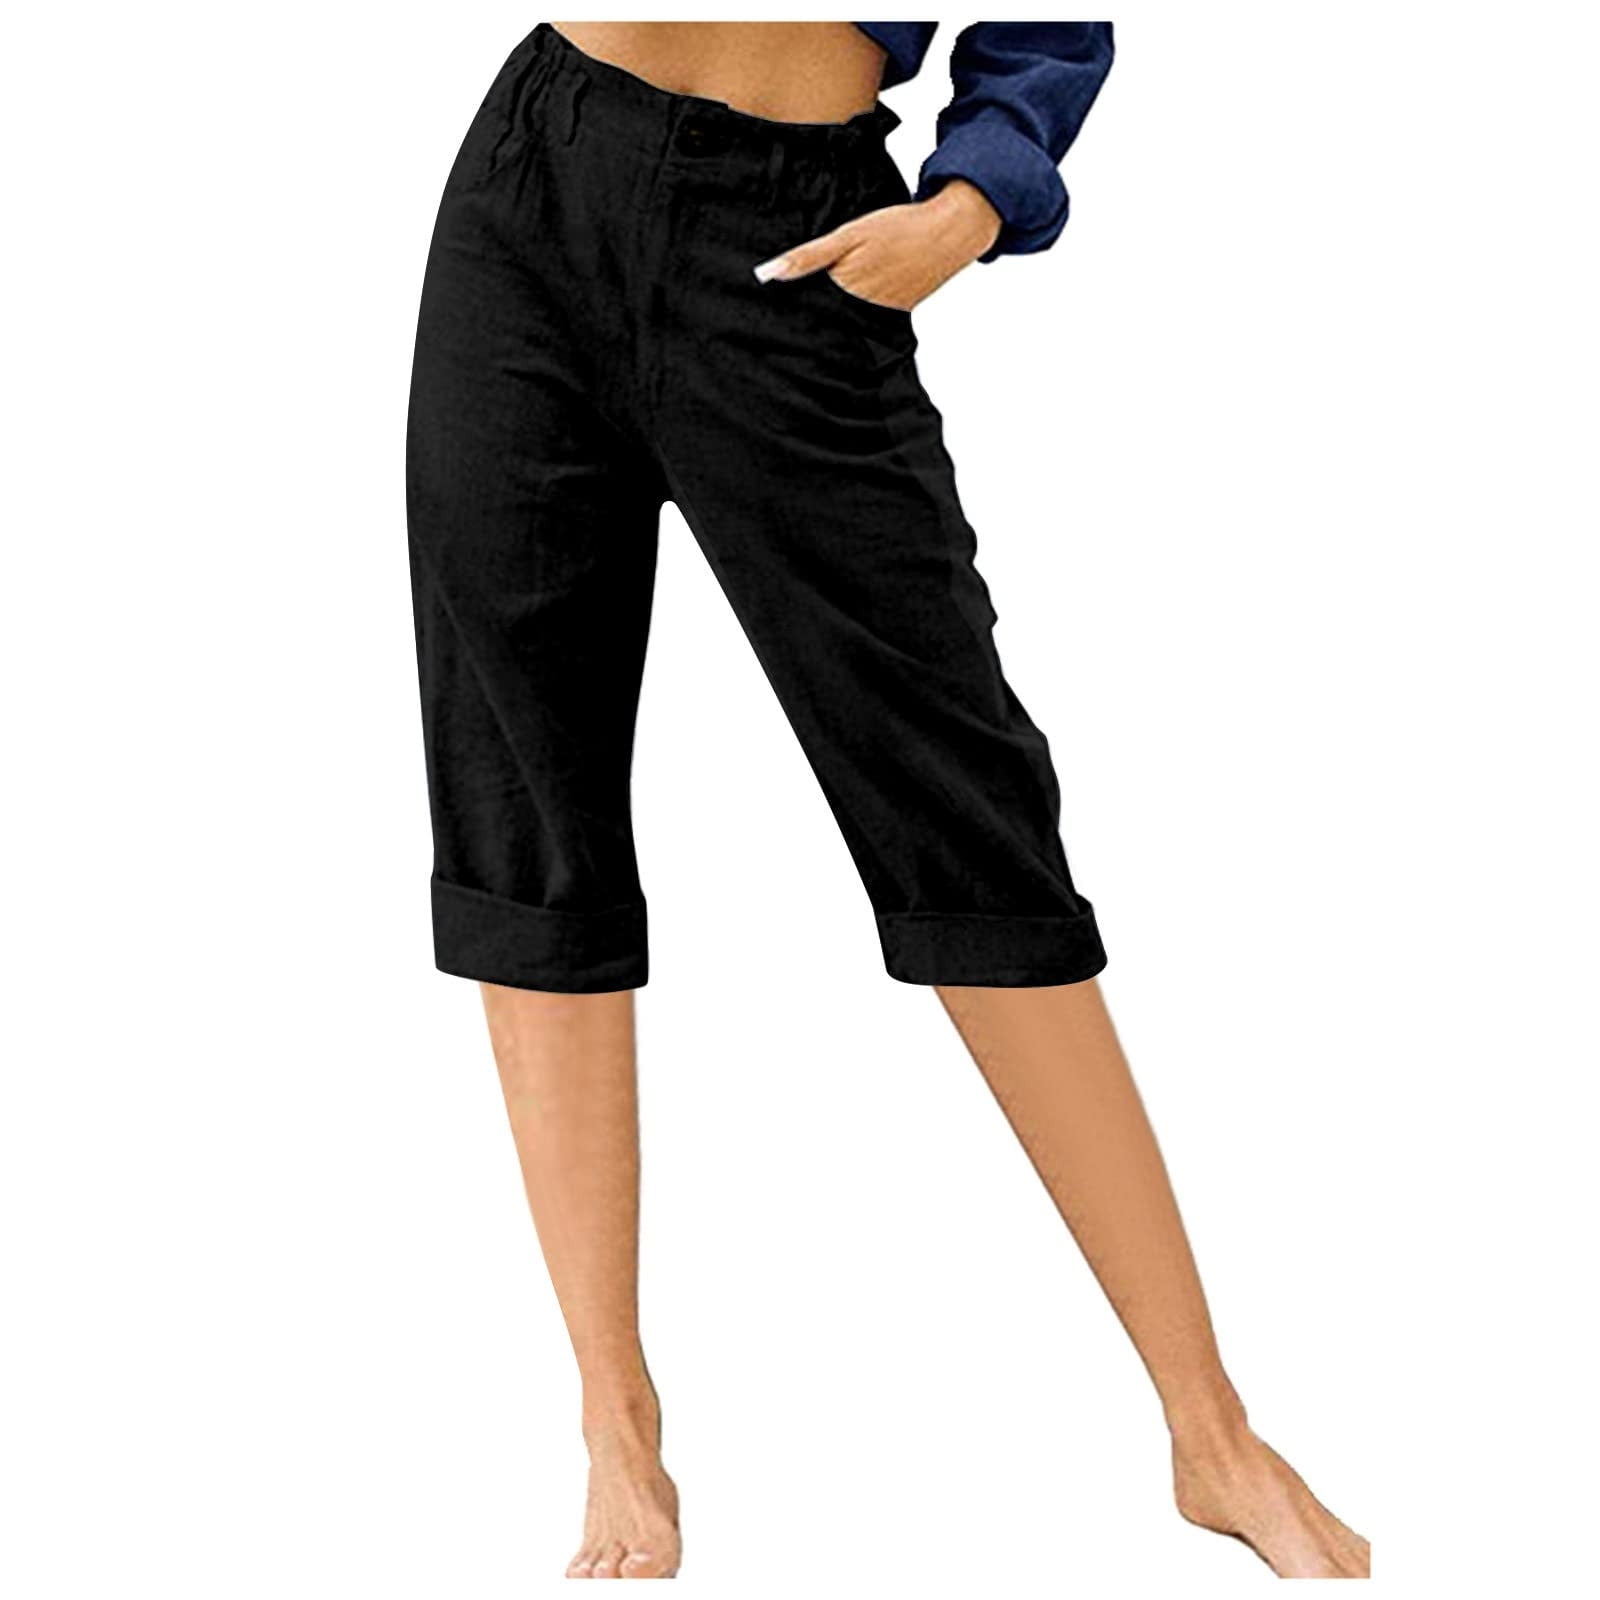 Capri Pants - Women's Cropped Pants